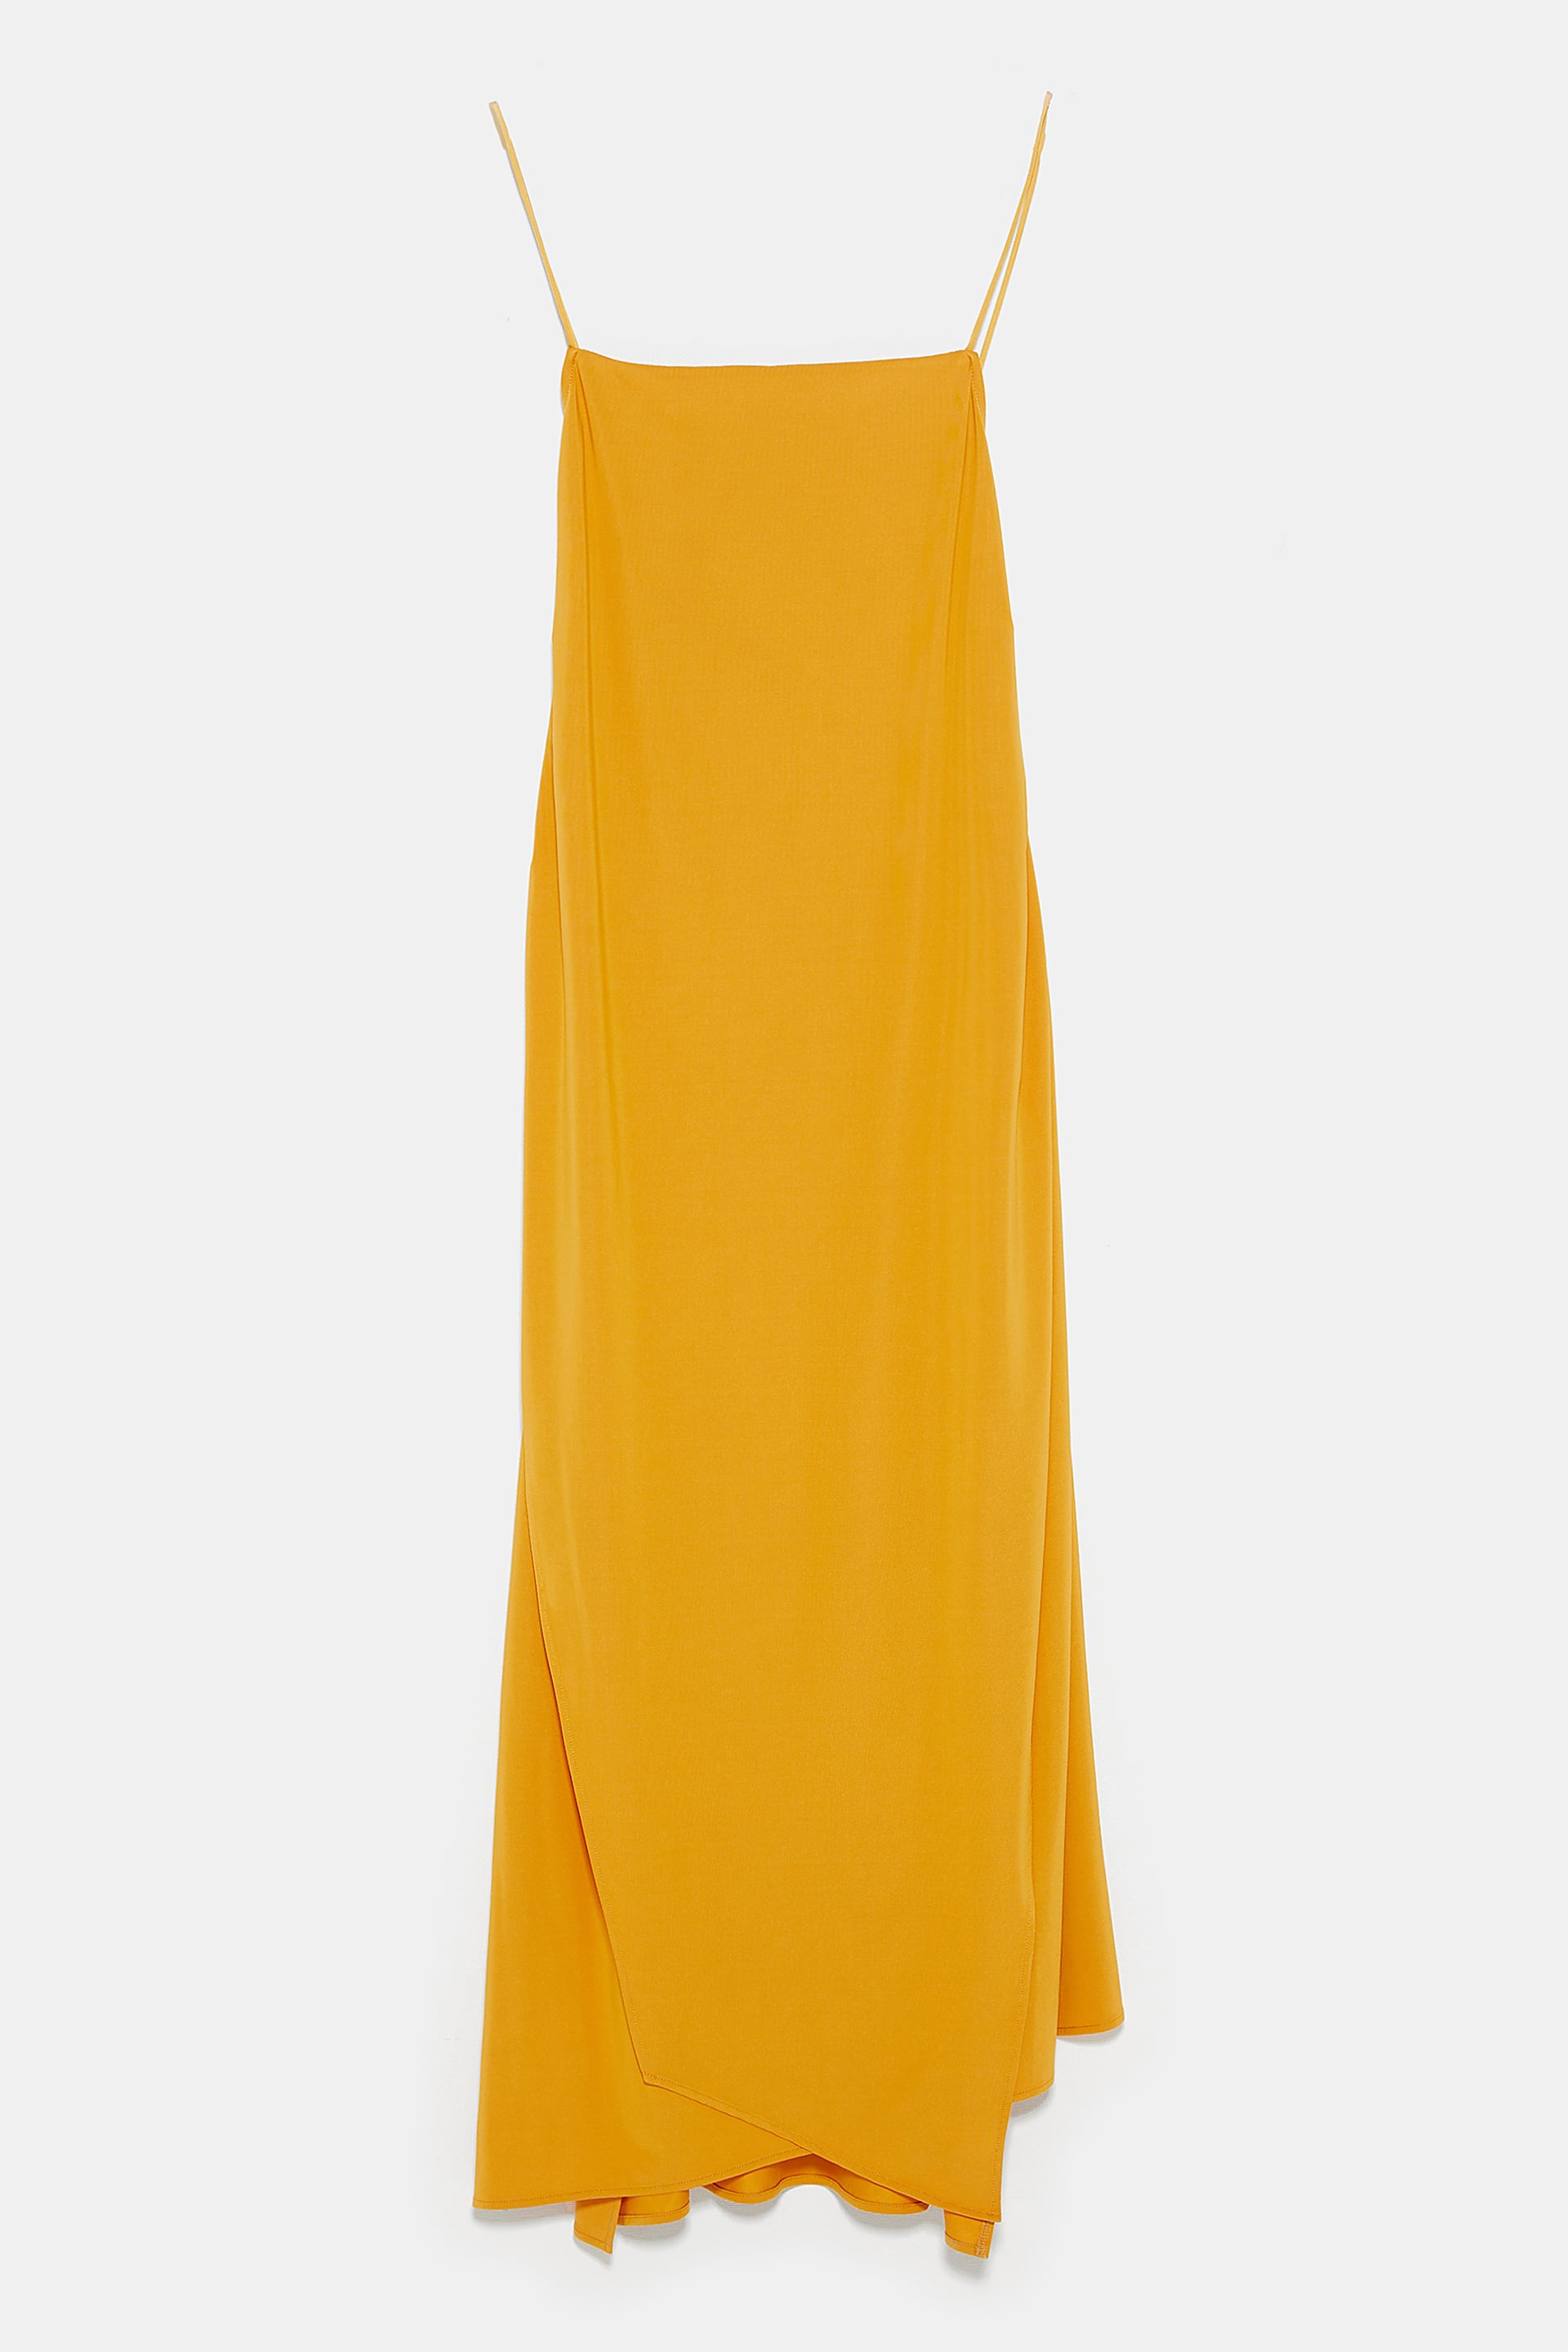 Vestido, Zara, €29,95 8